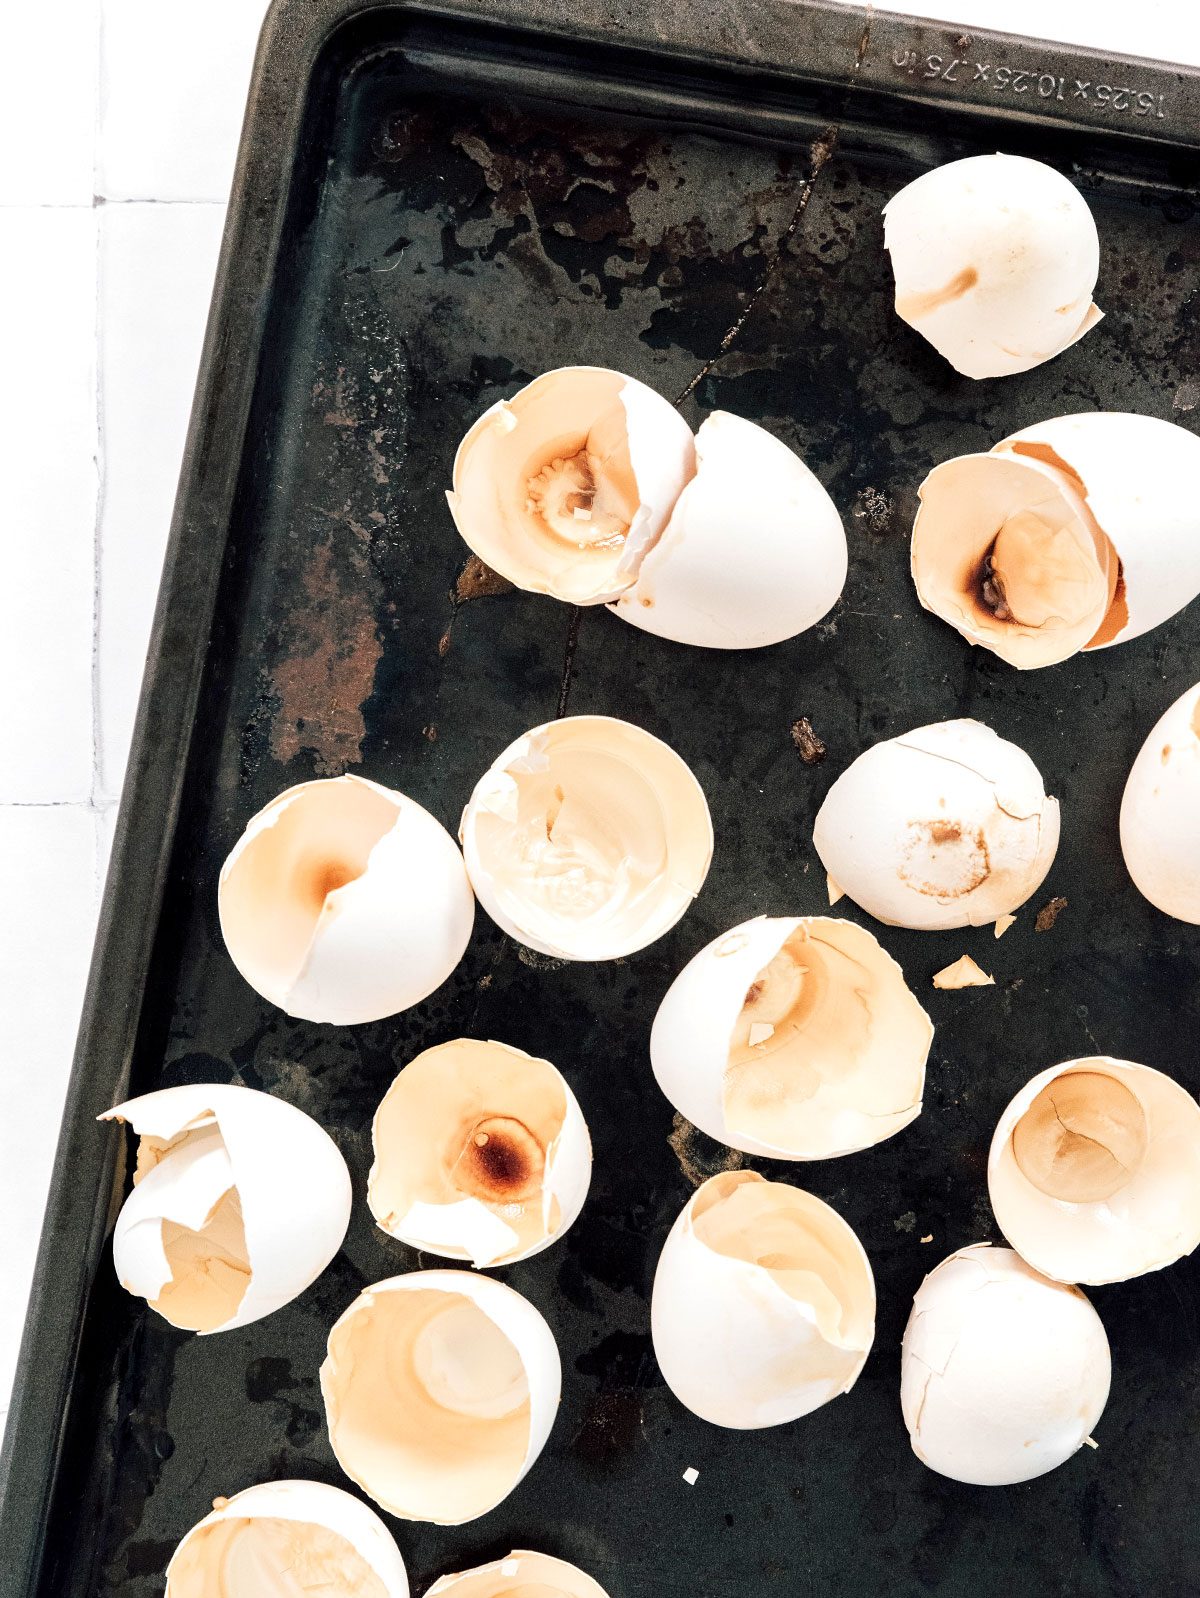 Egg shells on a baking sheet